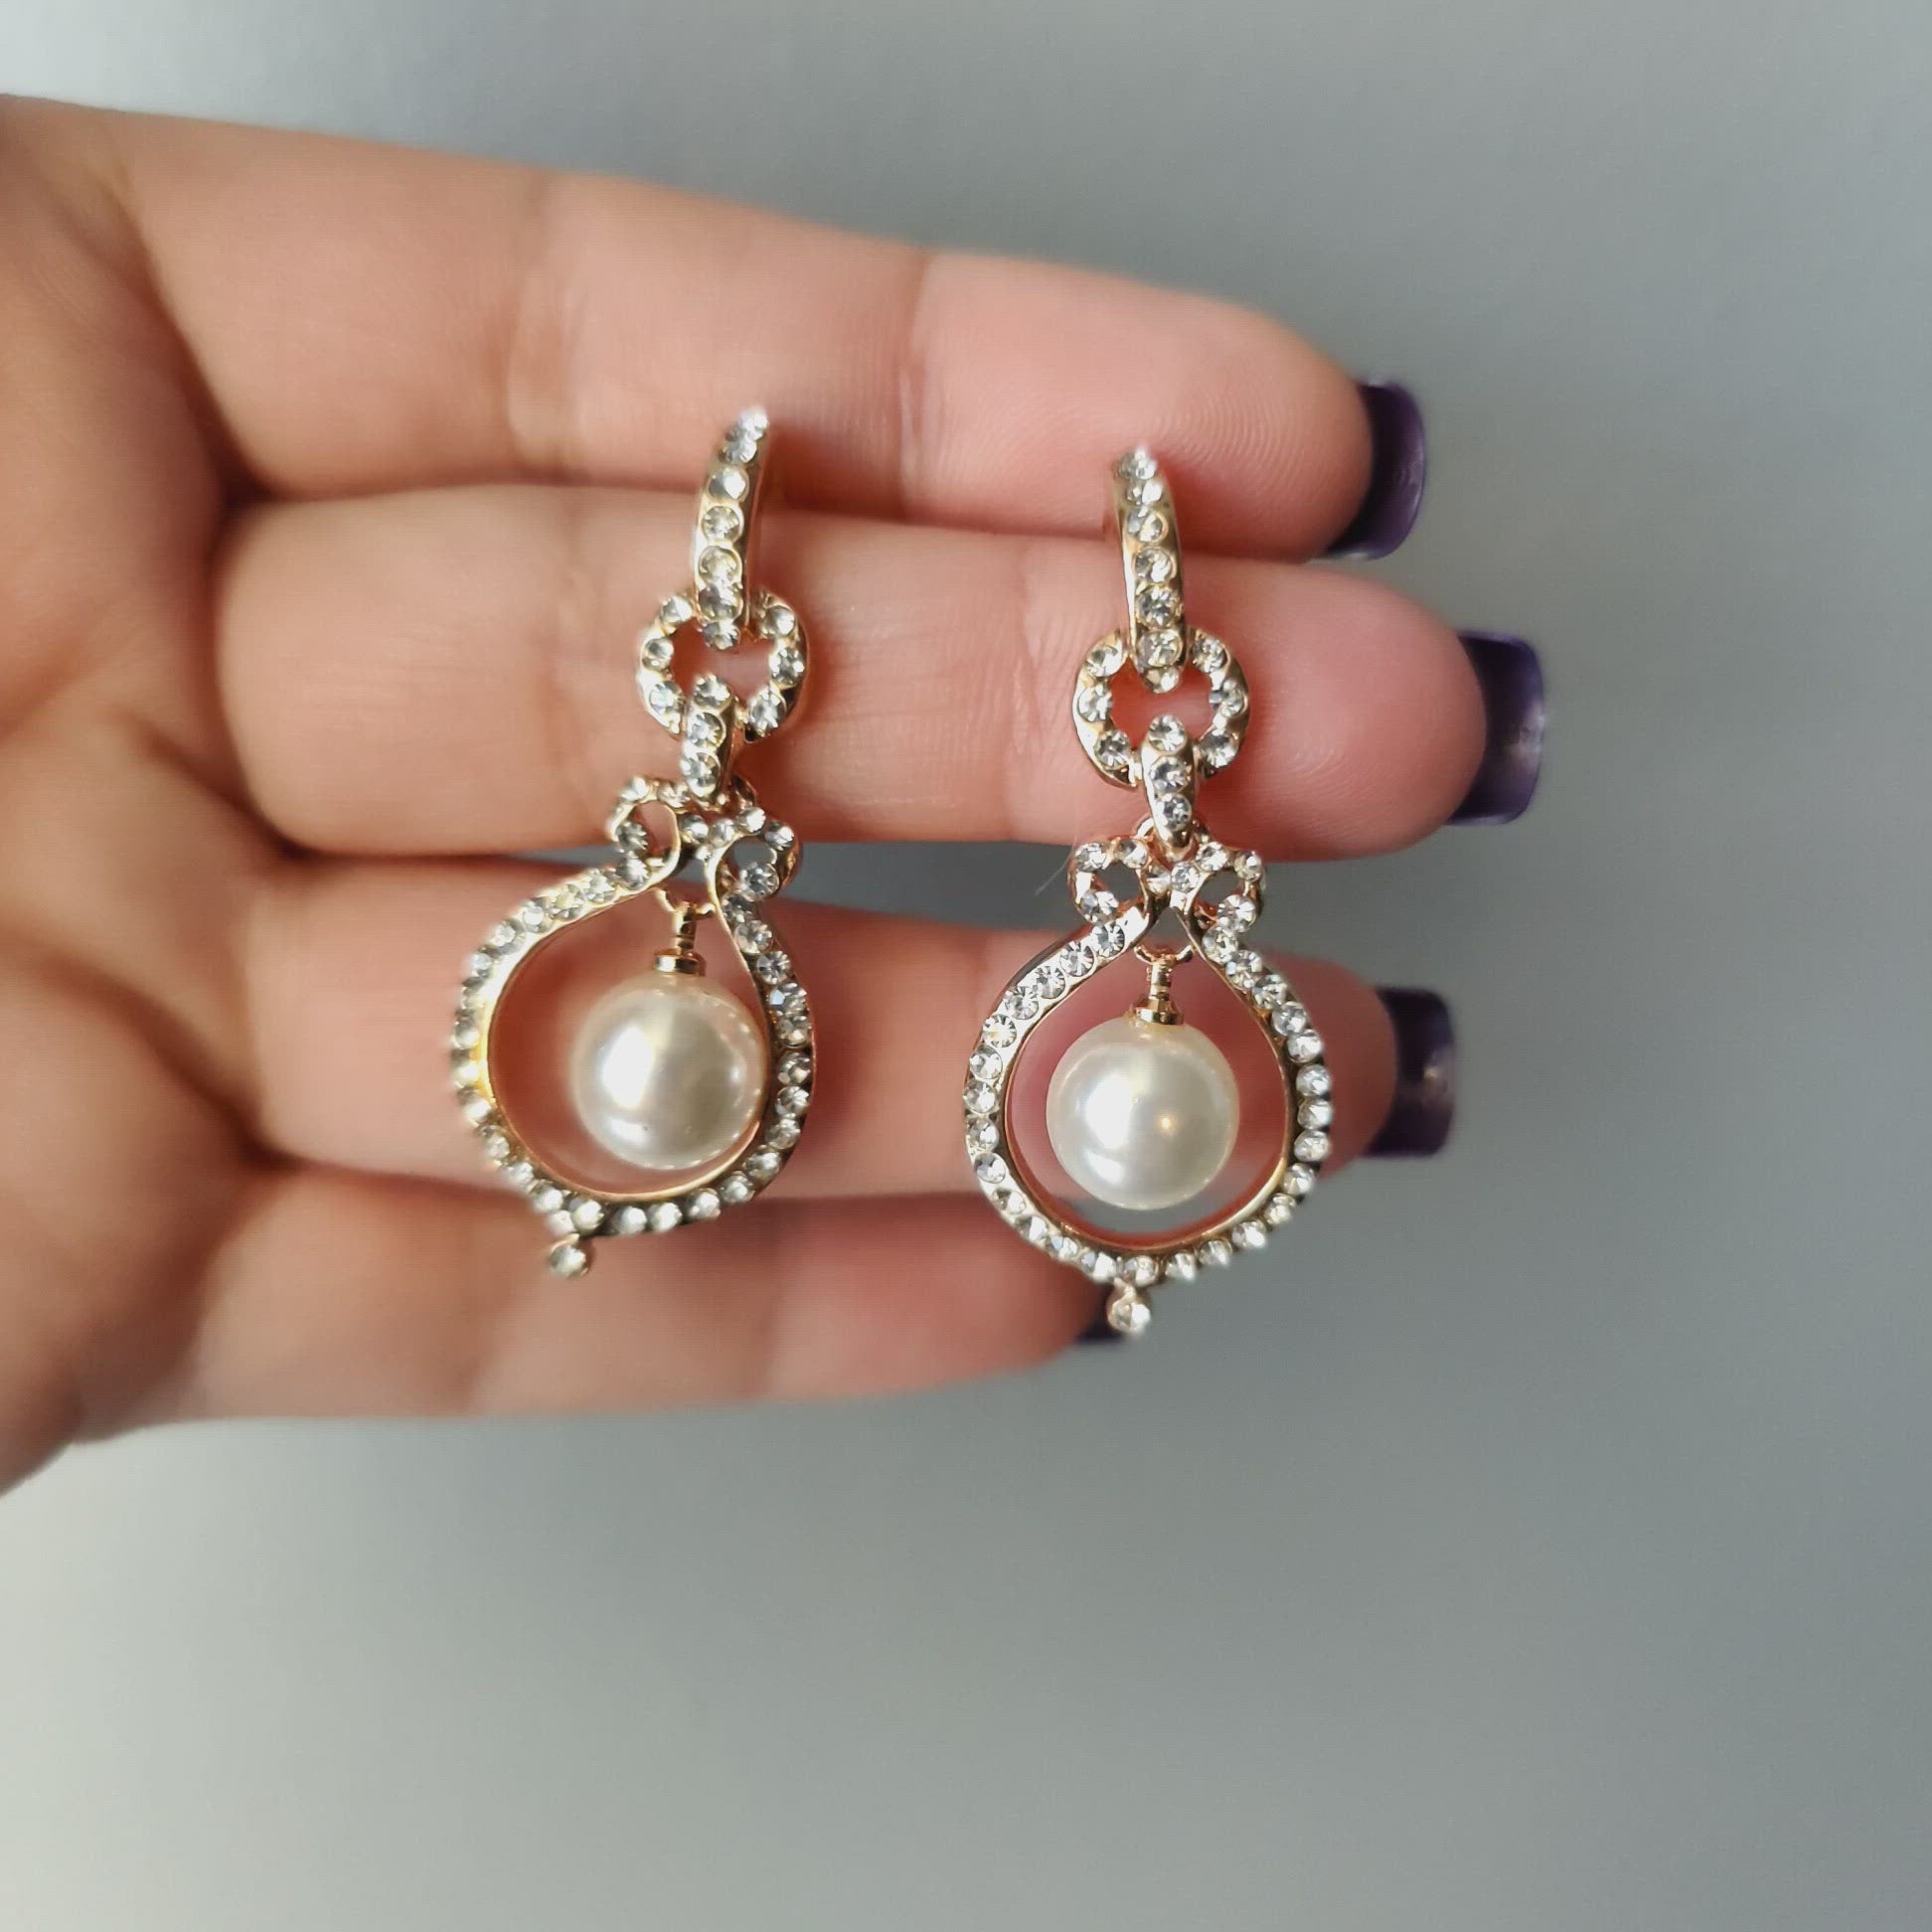 Crystal and Pearl wedding earrings